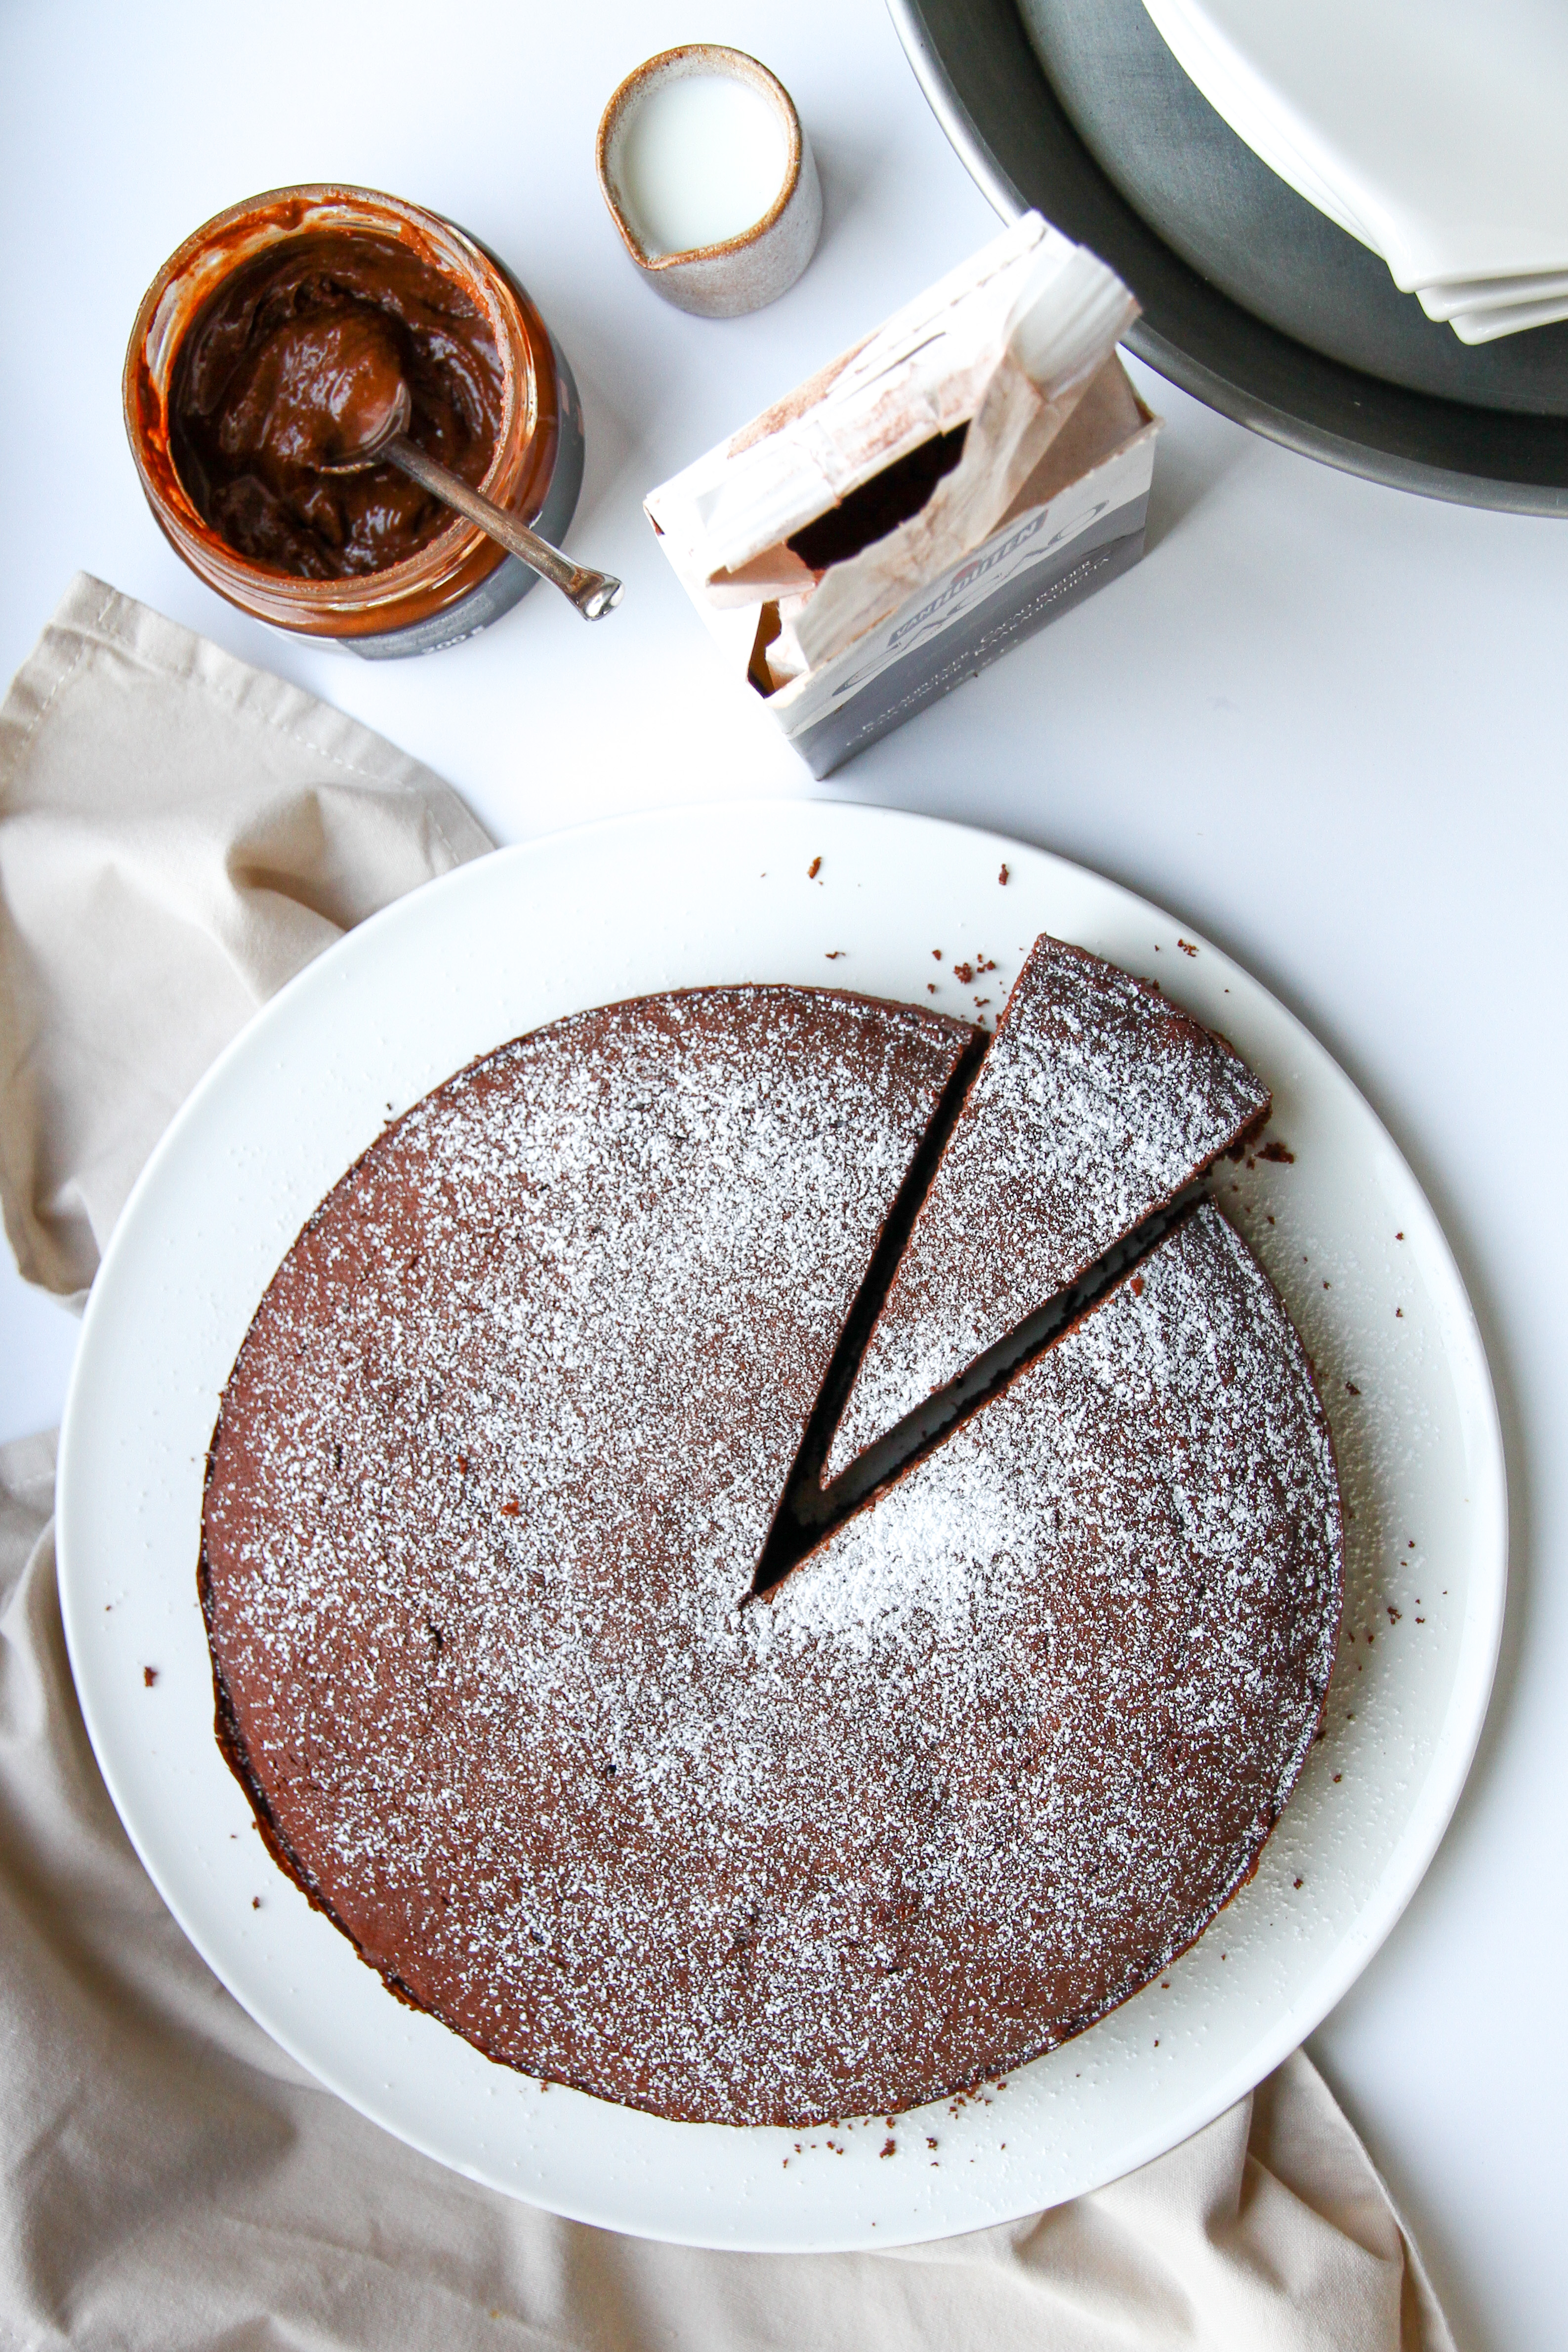 Chocolate cake by Yana Kozlova